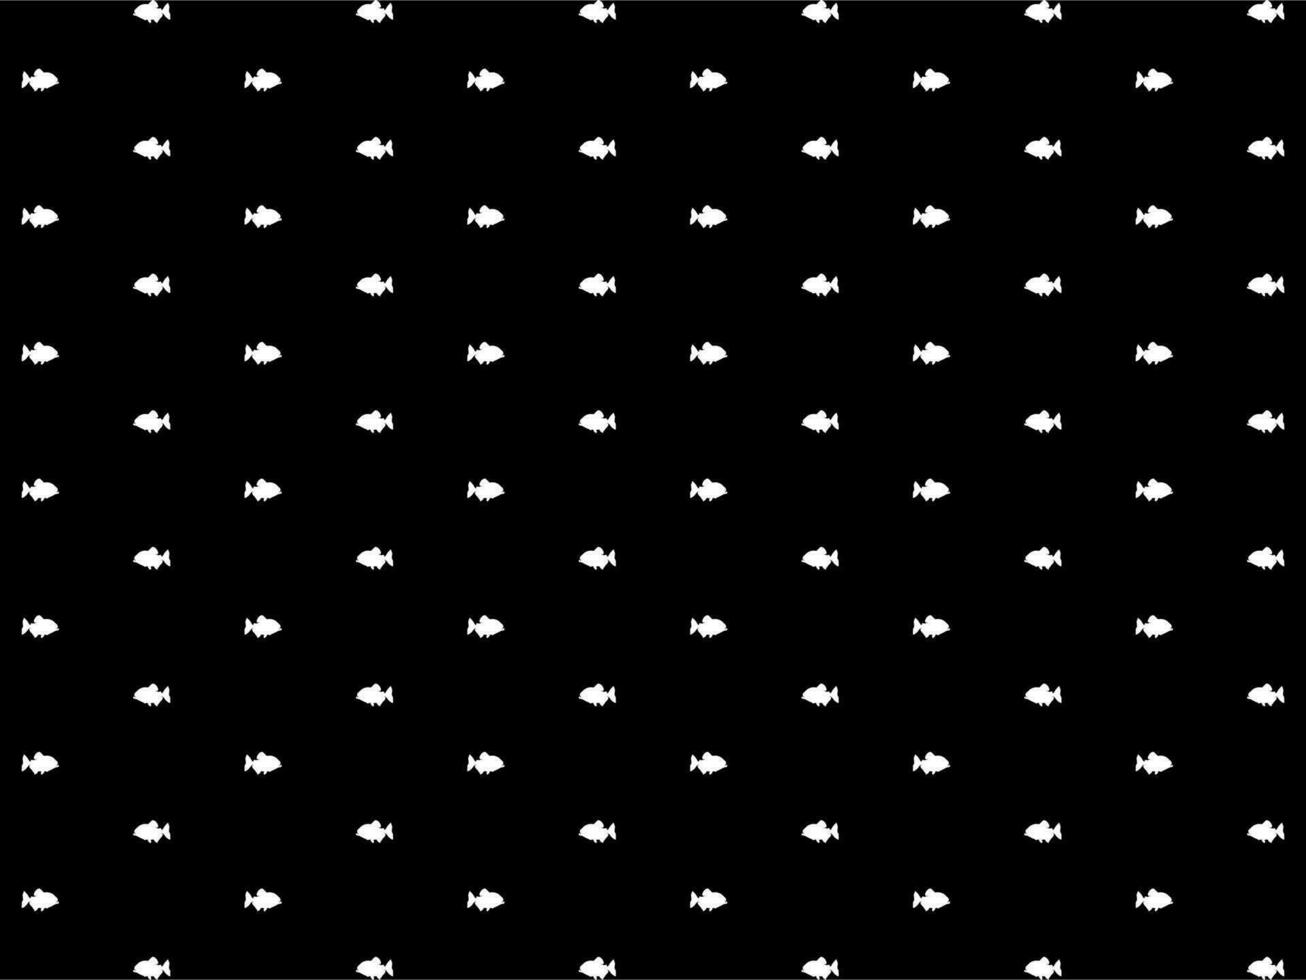 piranha vis motief patroon, voor decoratie, mode, interieur, buitenkant, tapijt patroon, textiel, kledingstuk, kleding stof, tegel, plastic, papier, inpakken, behang, achtergrond of grafisch ontwerp element vector